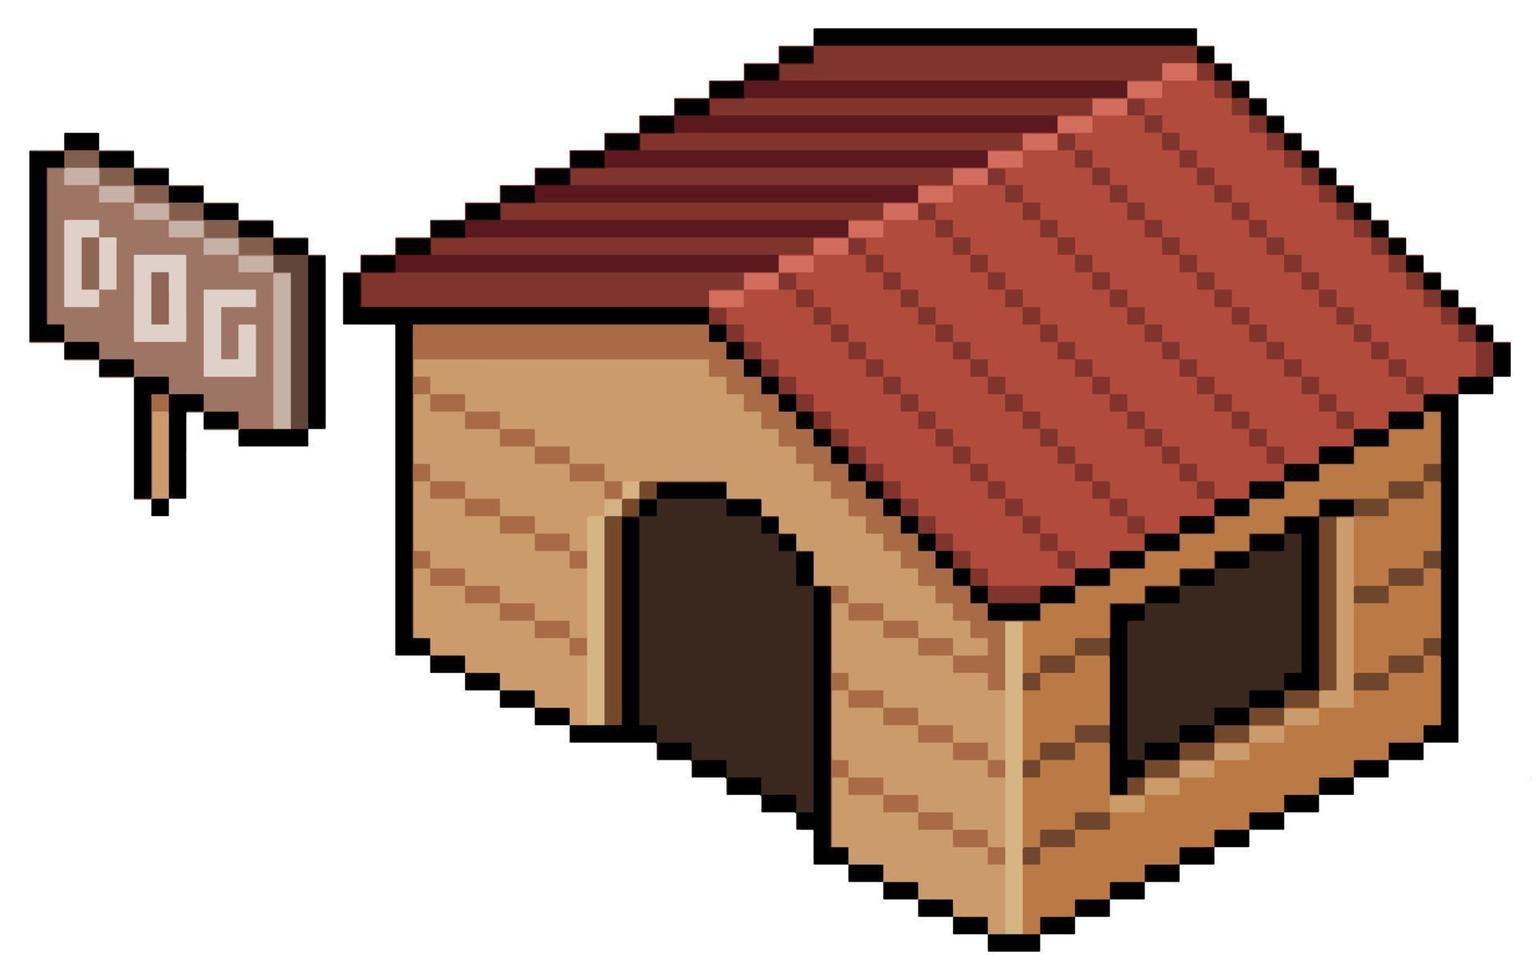 construção de casa de cachorro pixel art para jogo de 8 bits em fundo branco vetor